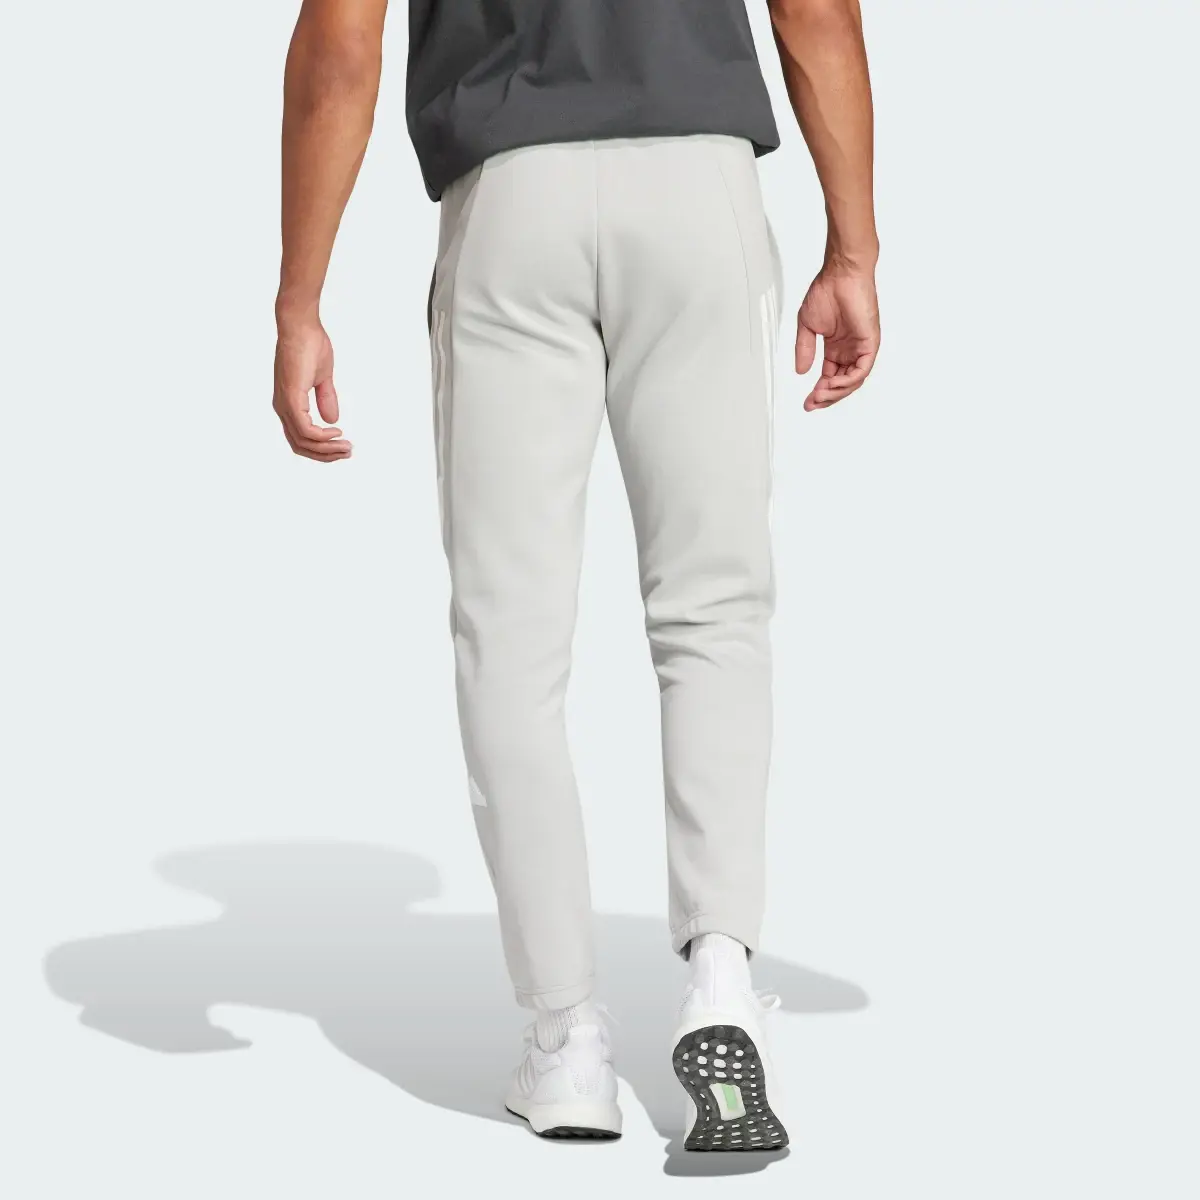 Adidas Future Icons 3-Streifen Hose. 2